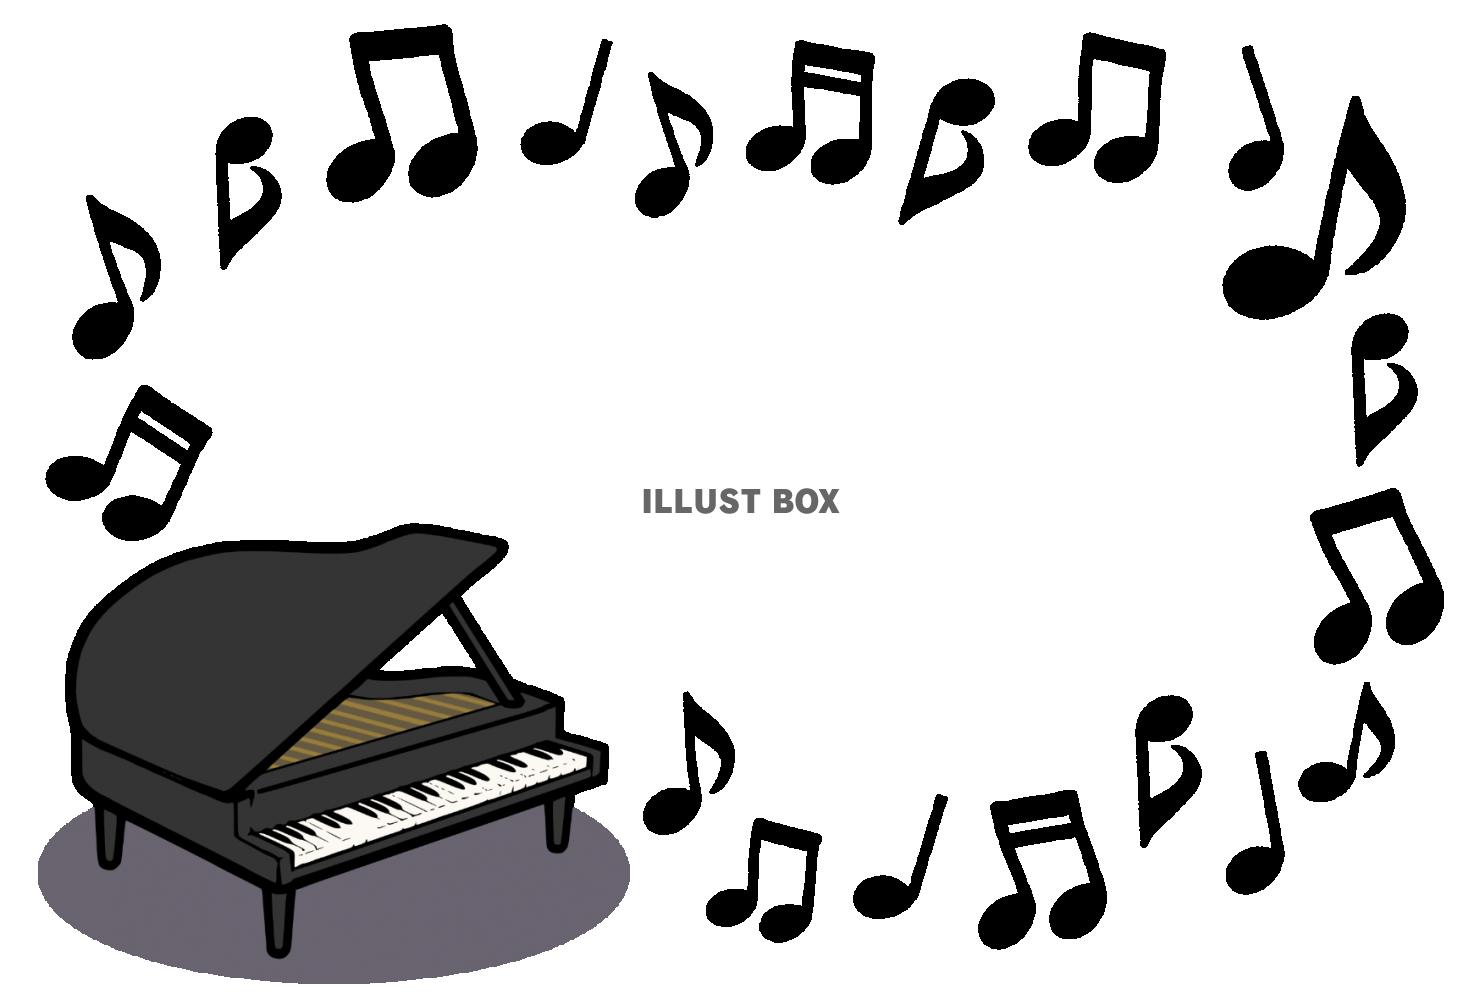 ピアノと音符のフレーム